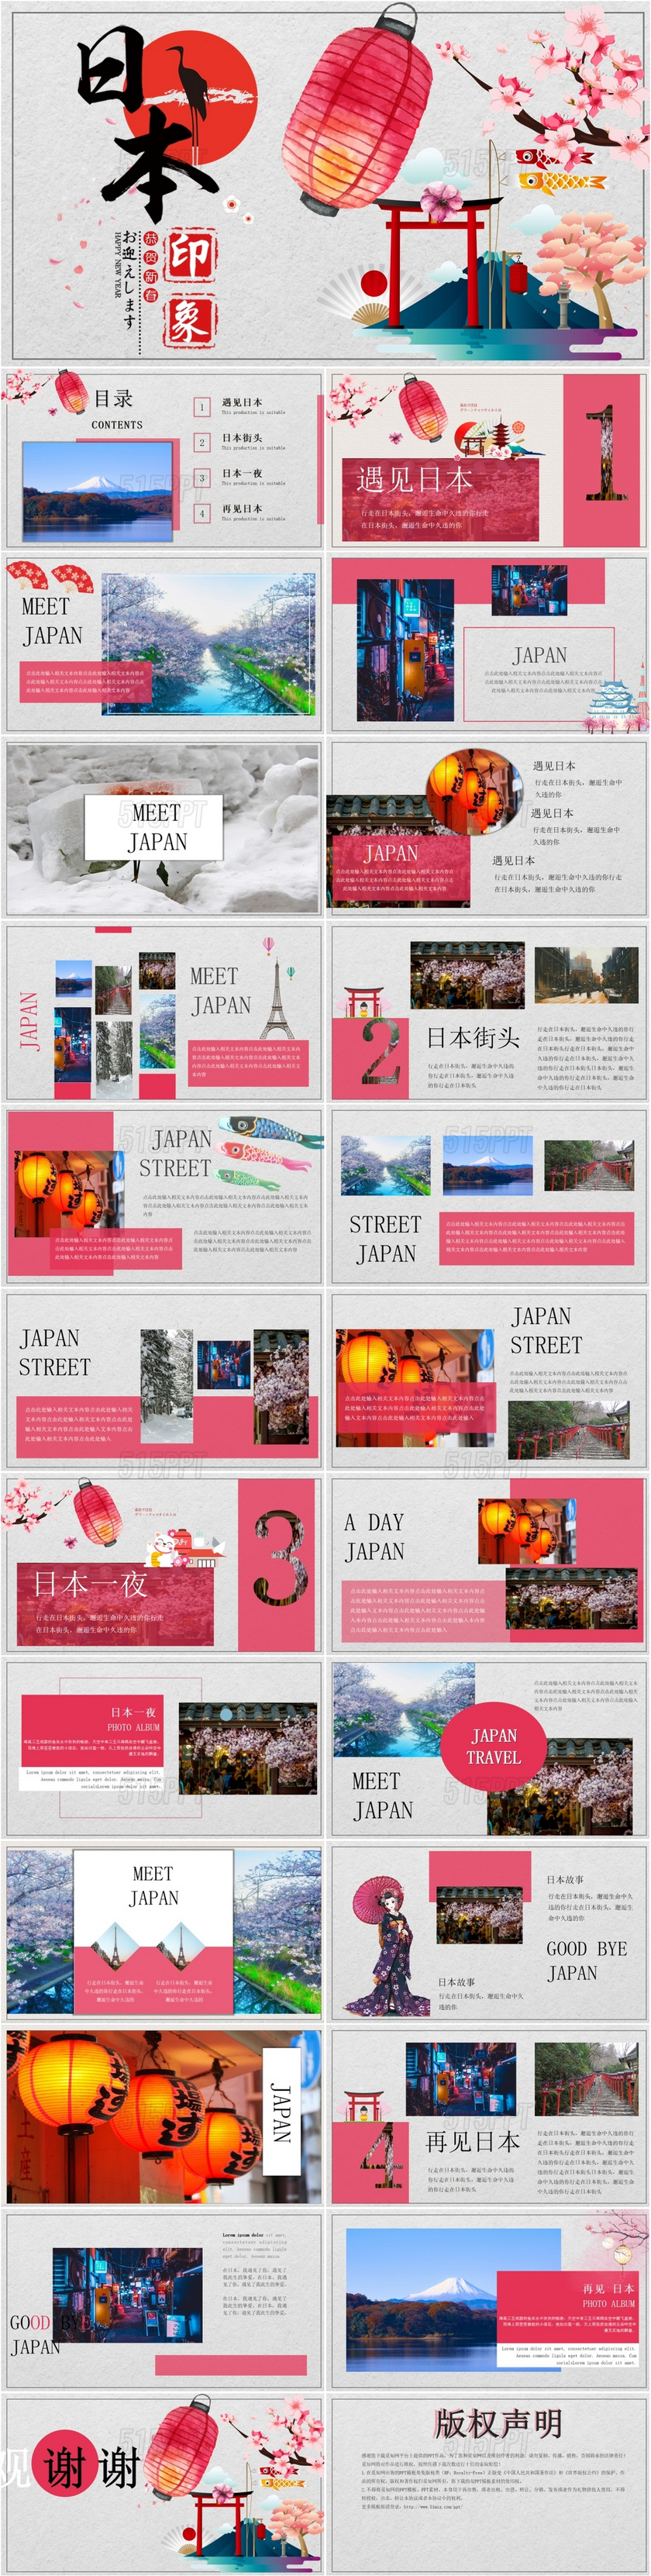 日本和风日系旅游宣传推广景点图册PPT模板日本旅游